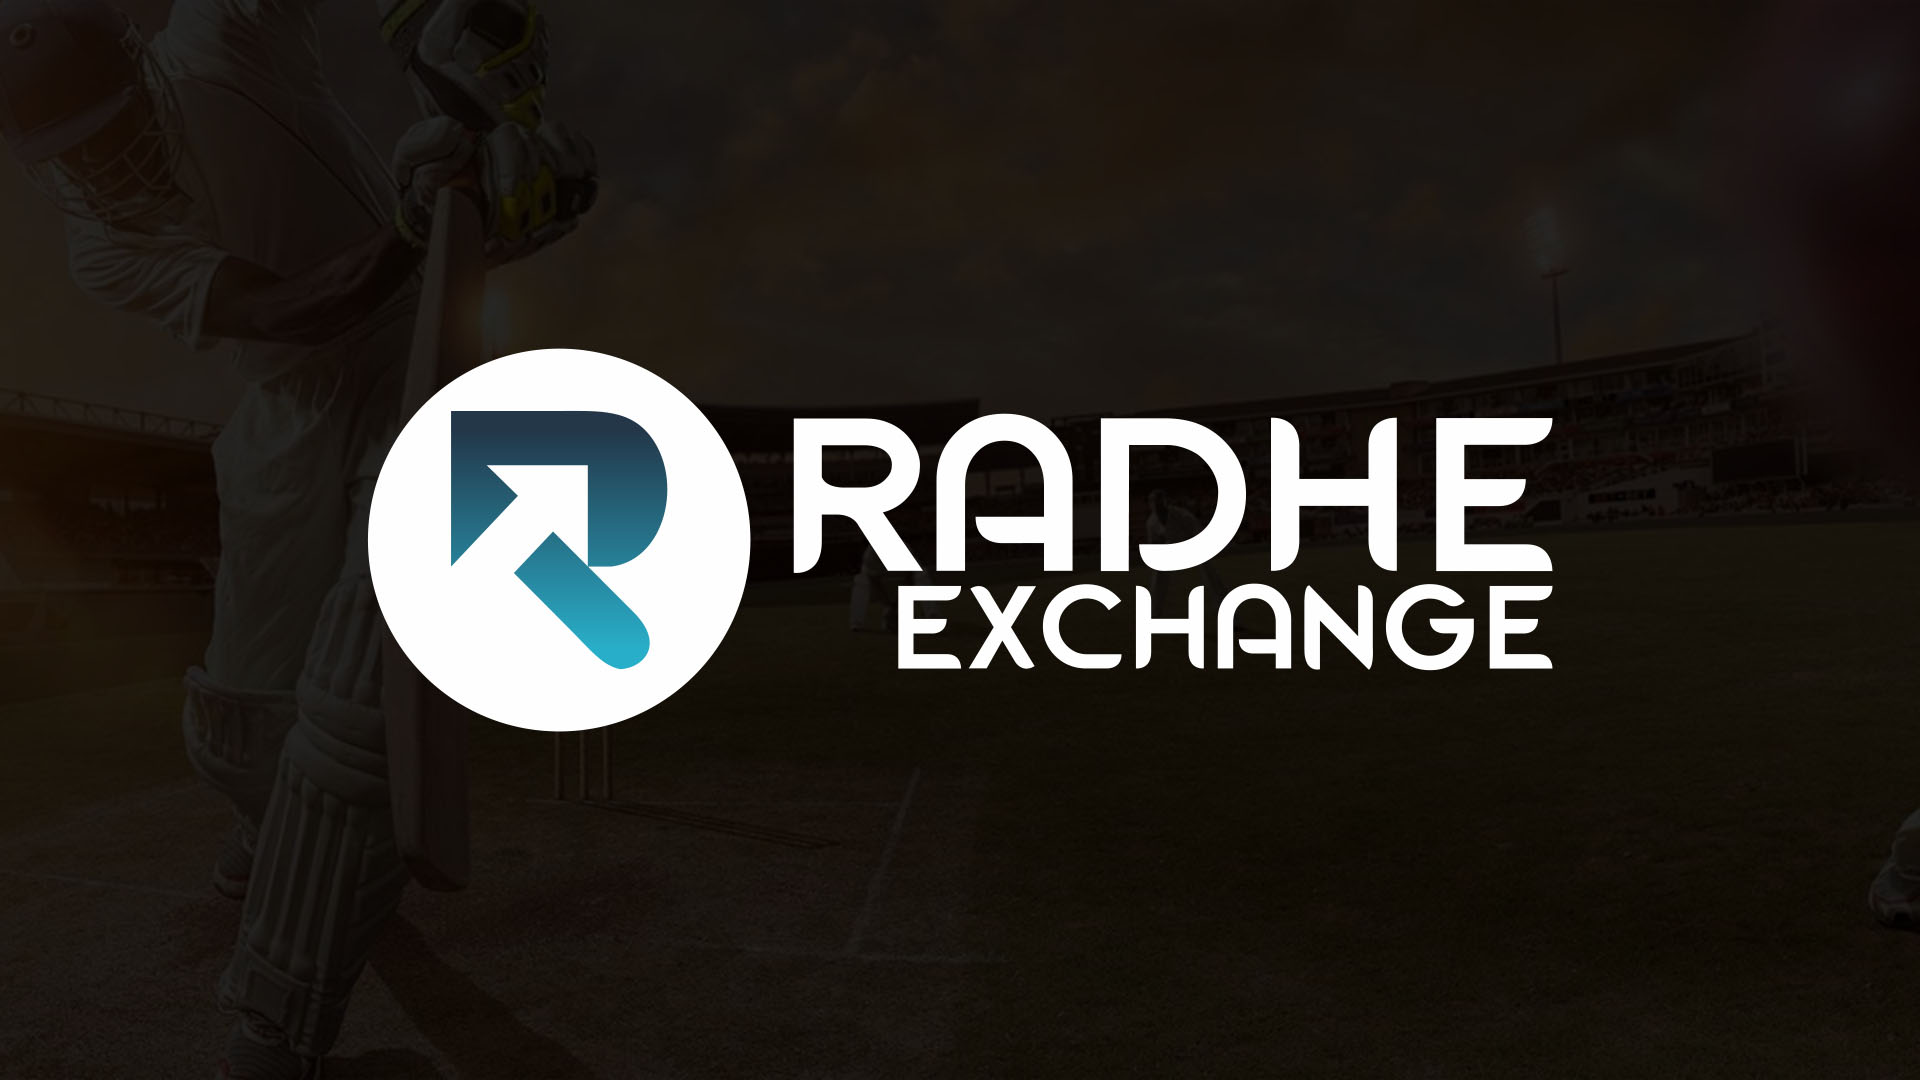 Radhe Exchange: Embracing Diversity Through Play Profits